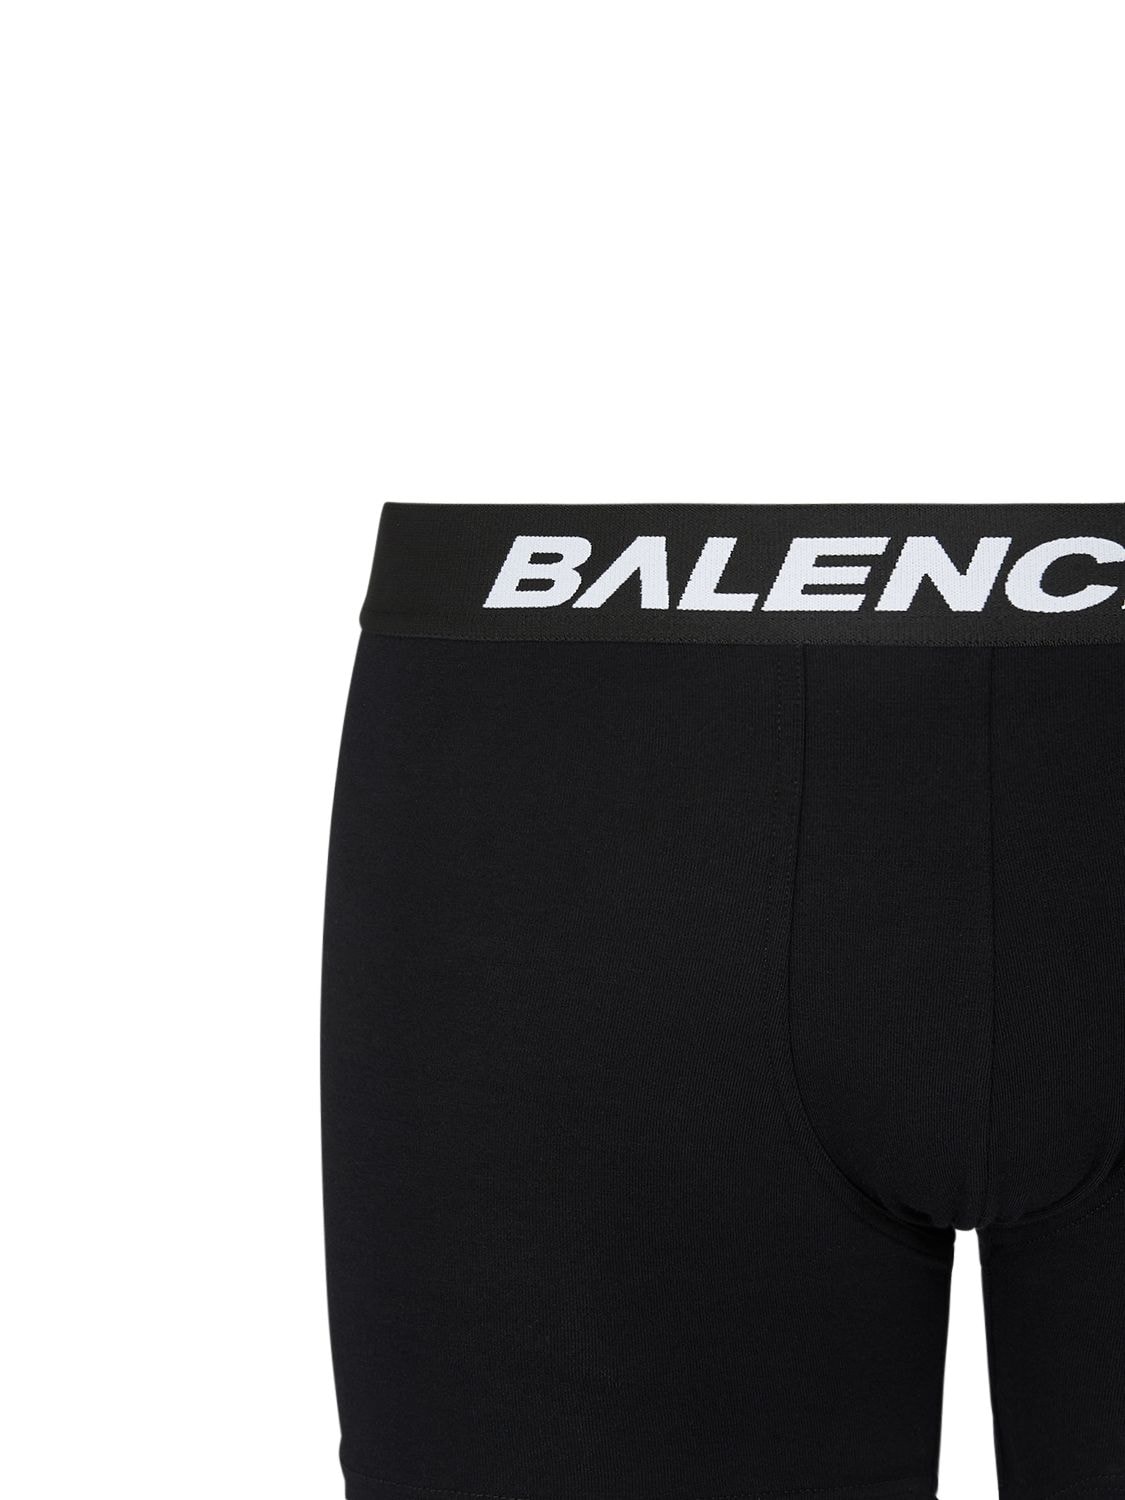 Shop Balenciaga Racer Soft Cotton Boxer Briefs In Black